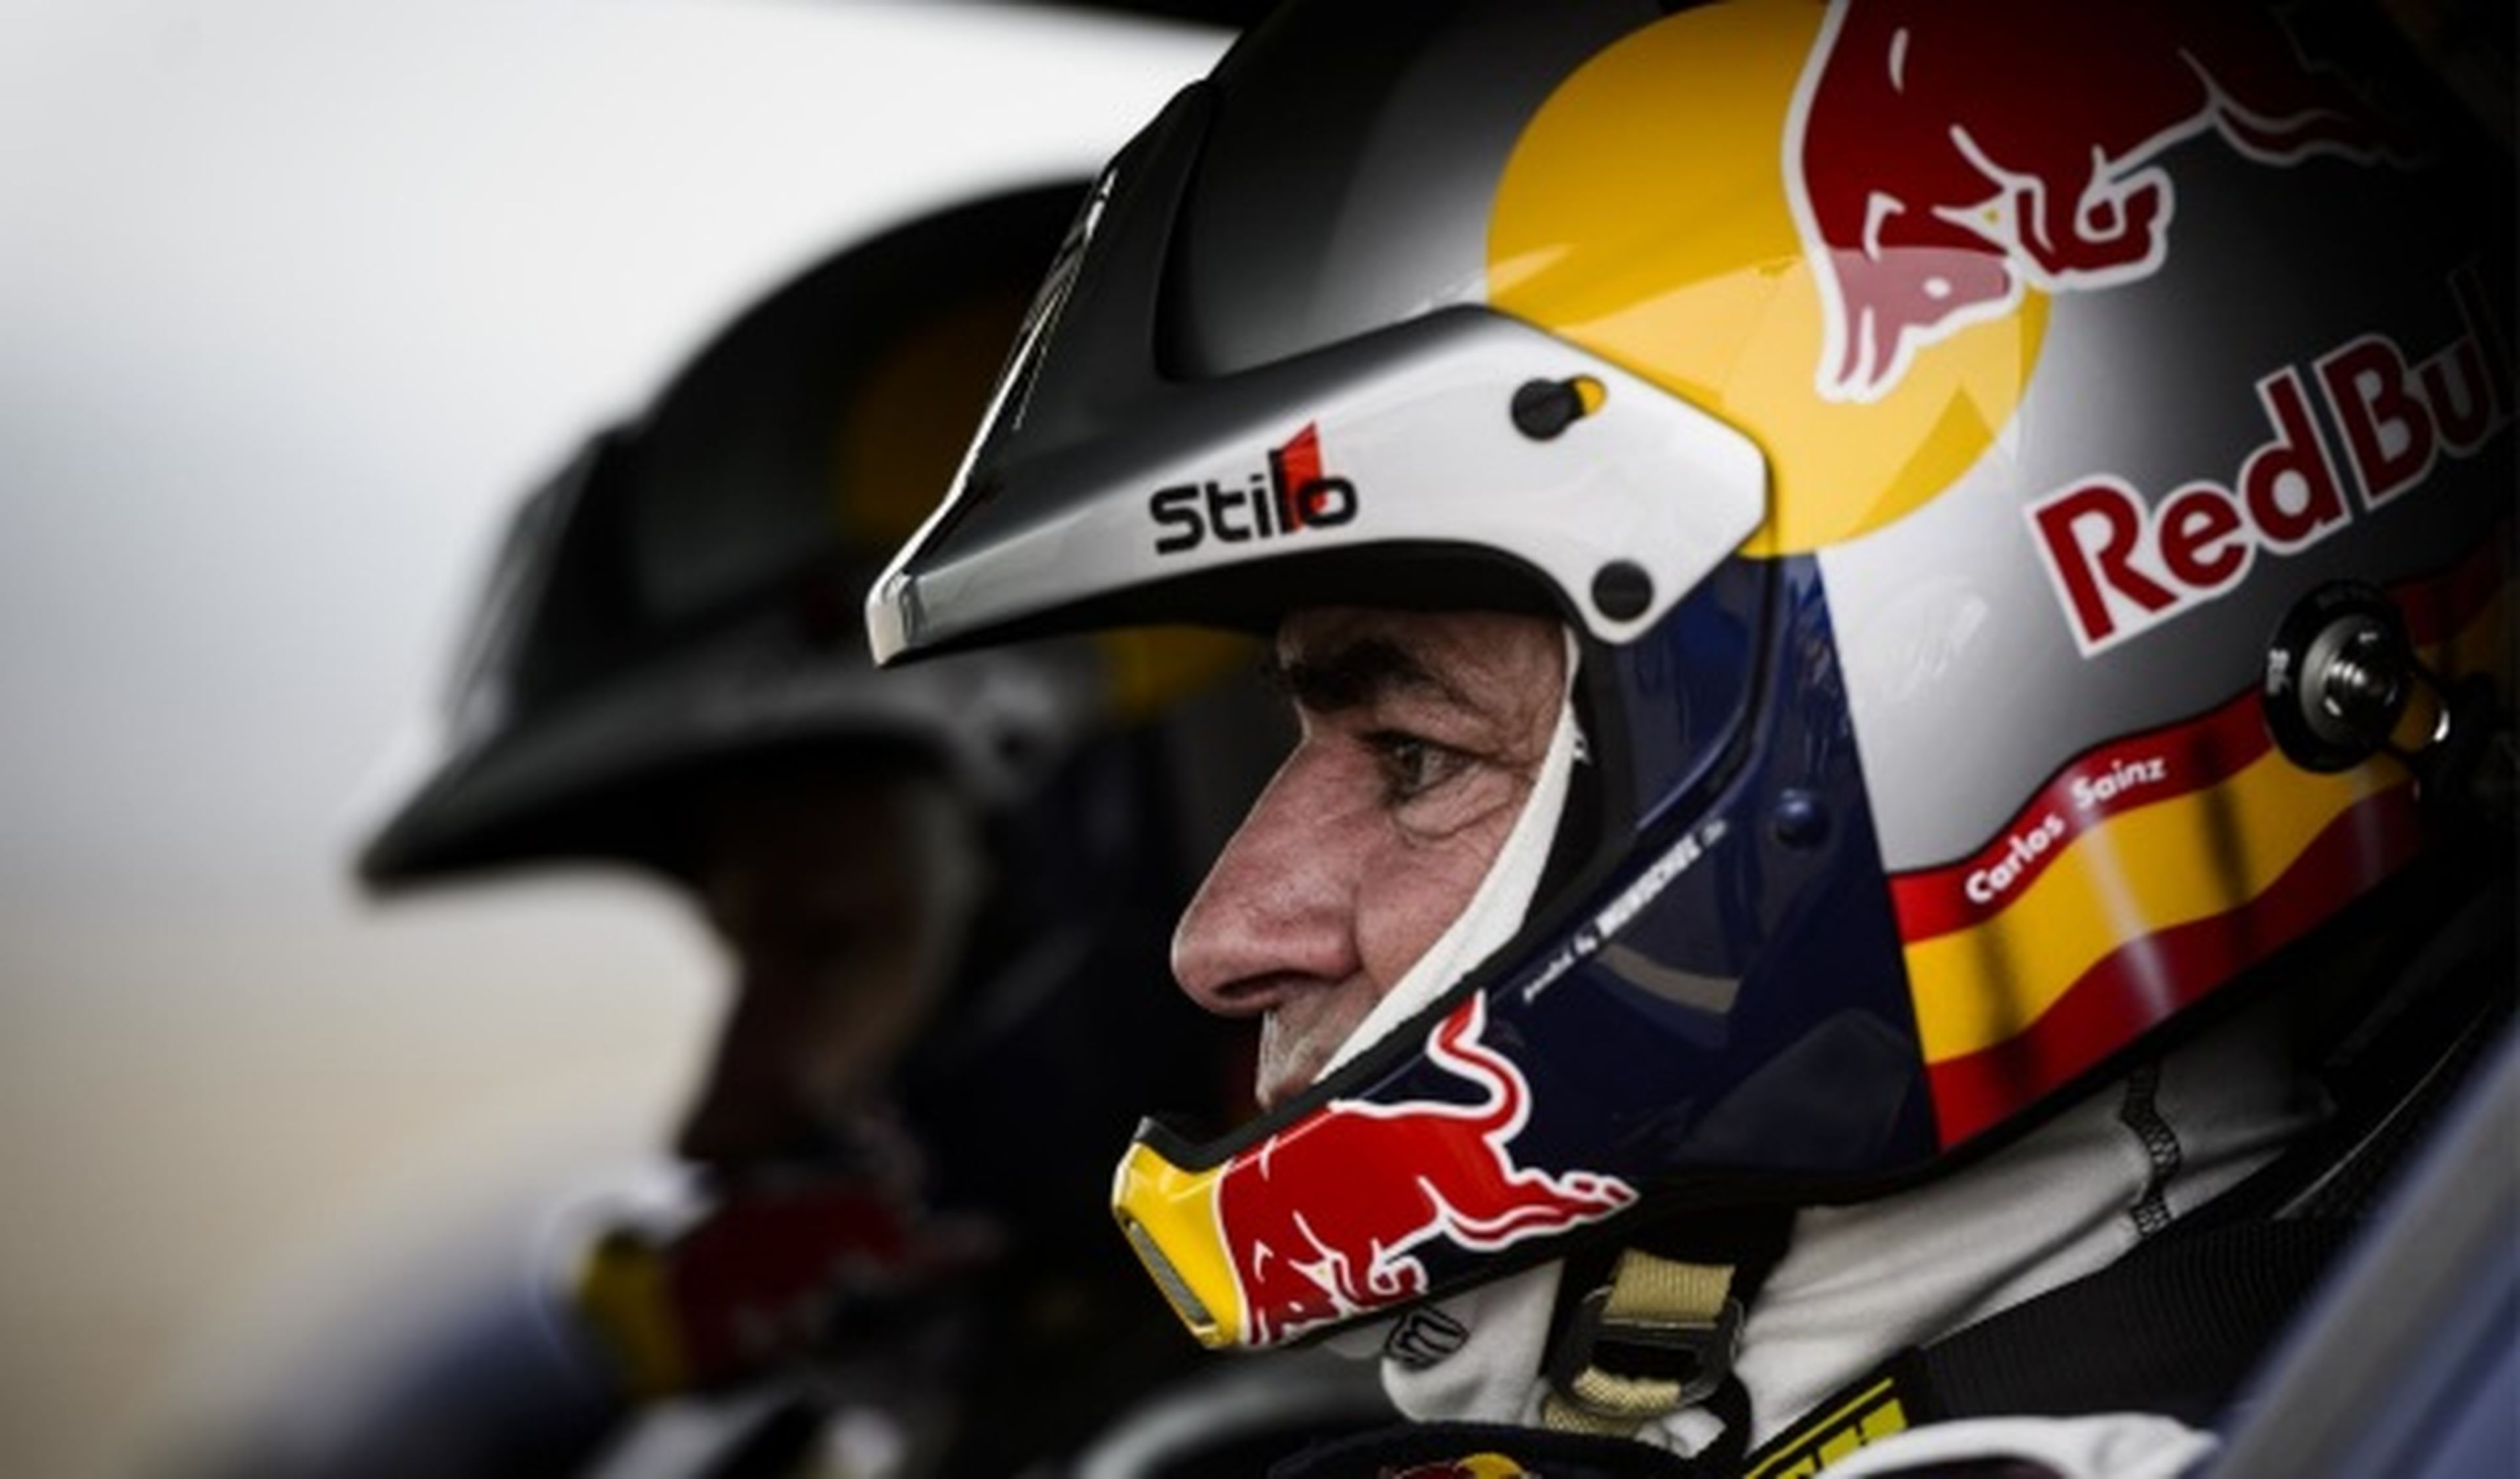 Sainz no correrá el Rally Canarias 2014. Kankkunen, sí